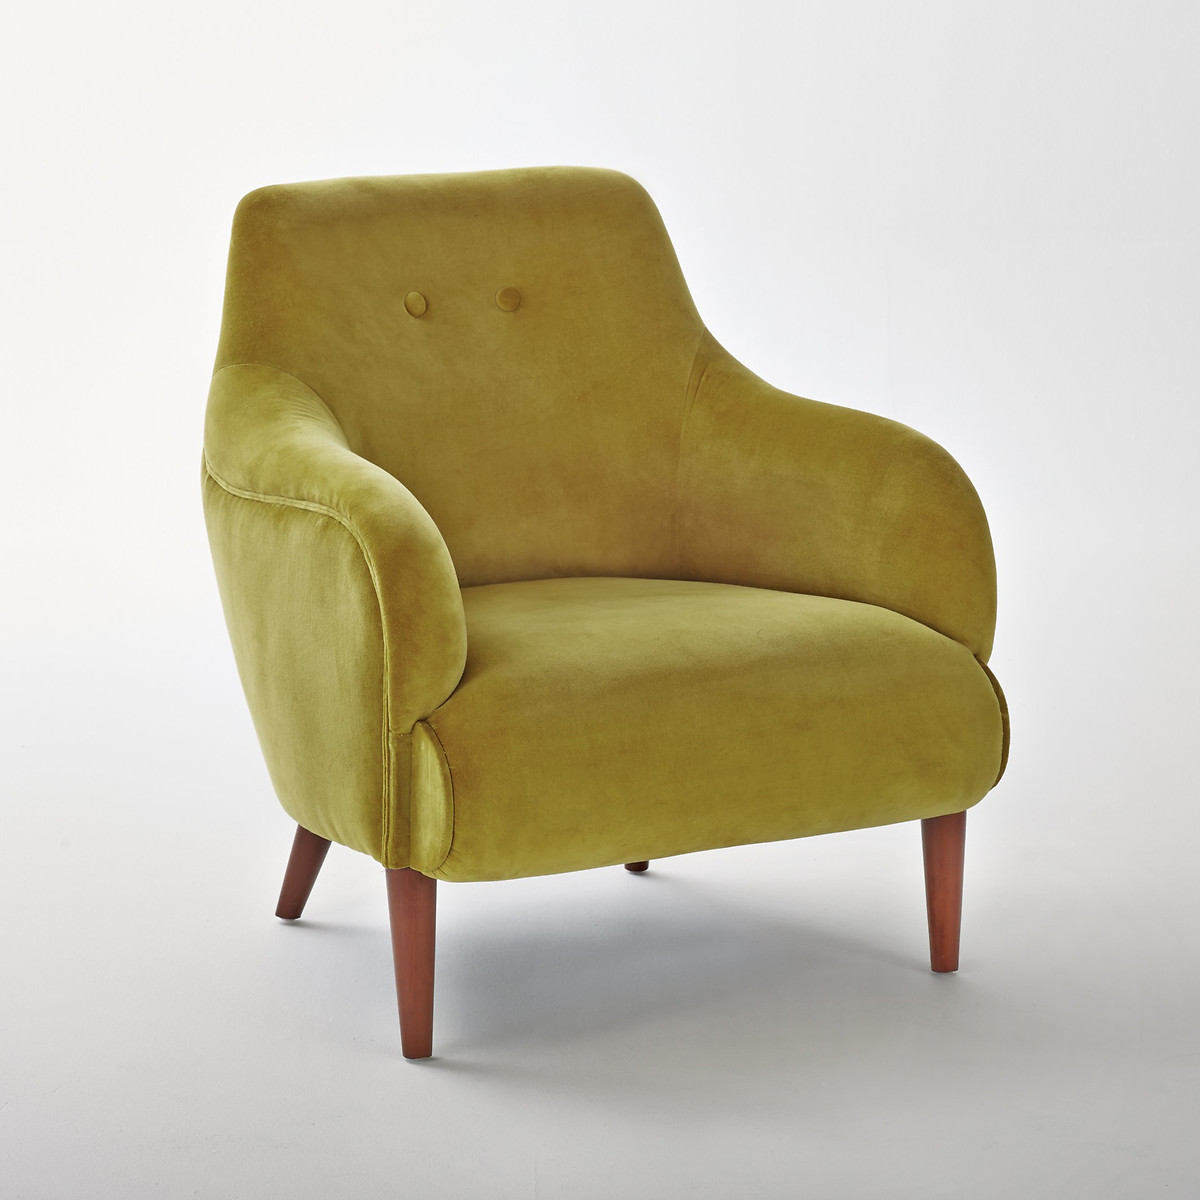 Кресло из велюра Lipstick единый размер желтый кресло из стеблей ротанга и велюра dhony единый размер желтый